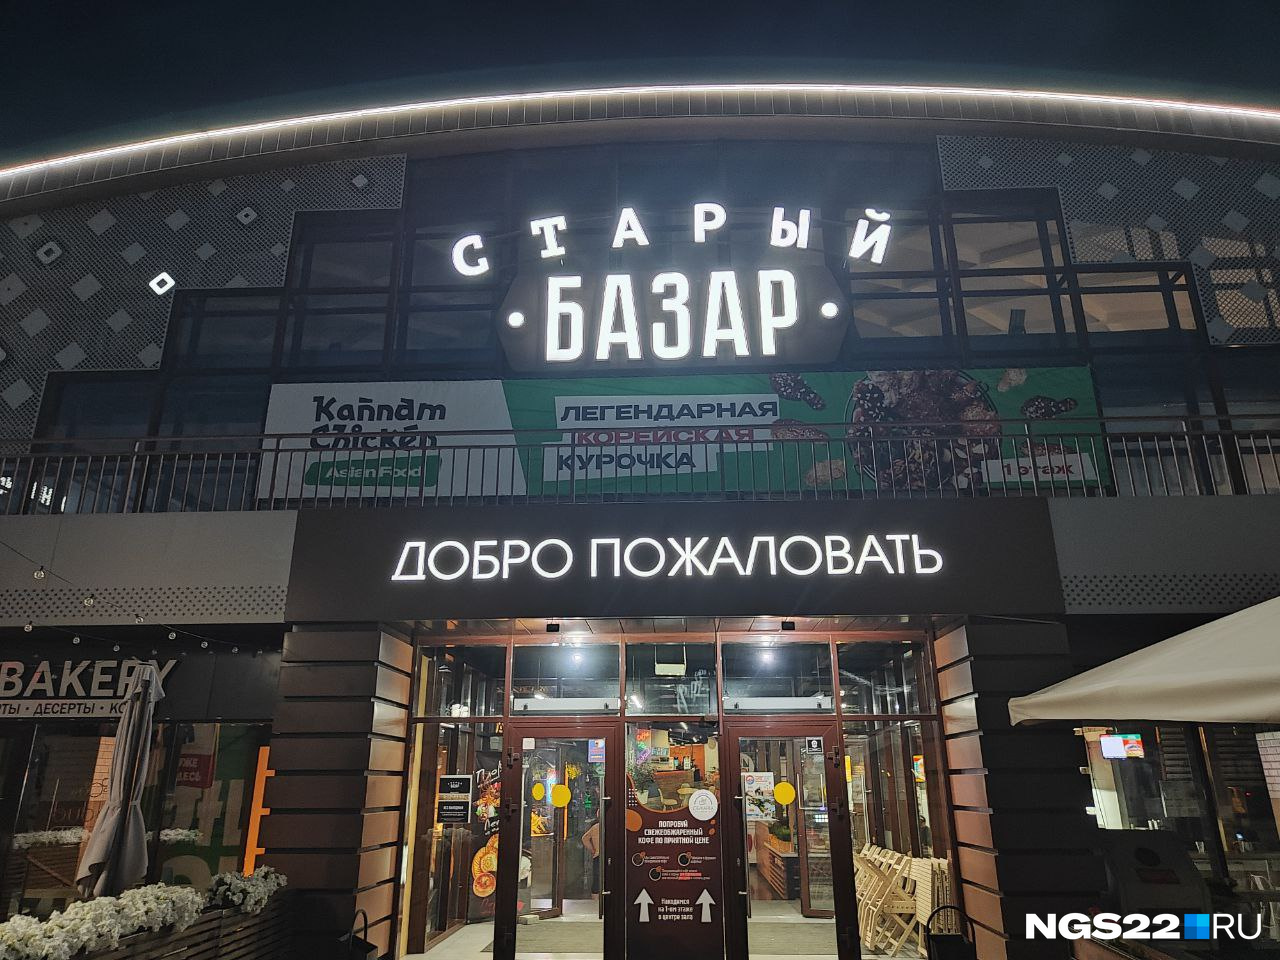 Кто в ответе за базар? Почему оставшаяся без комментариев облава силовиков в Барнауле — ненормальная история